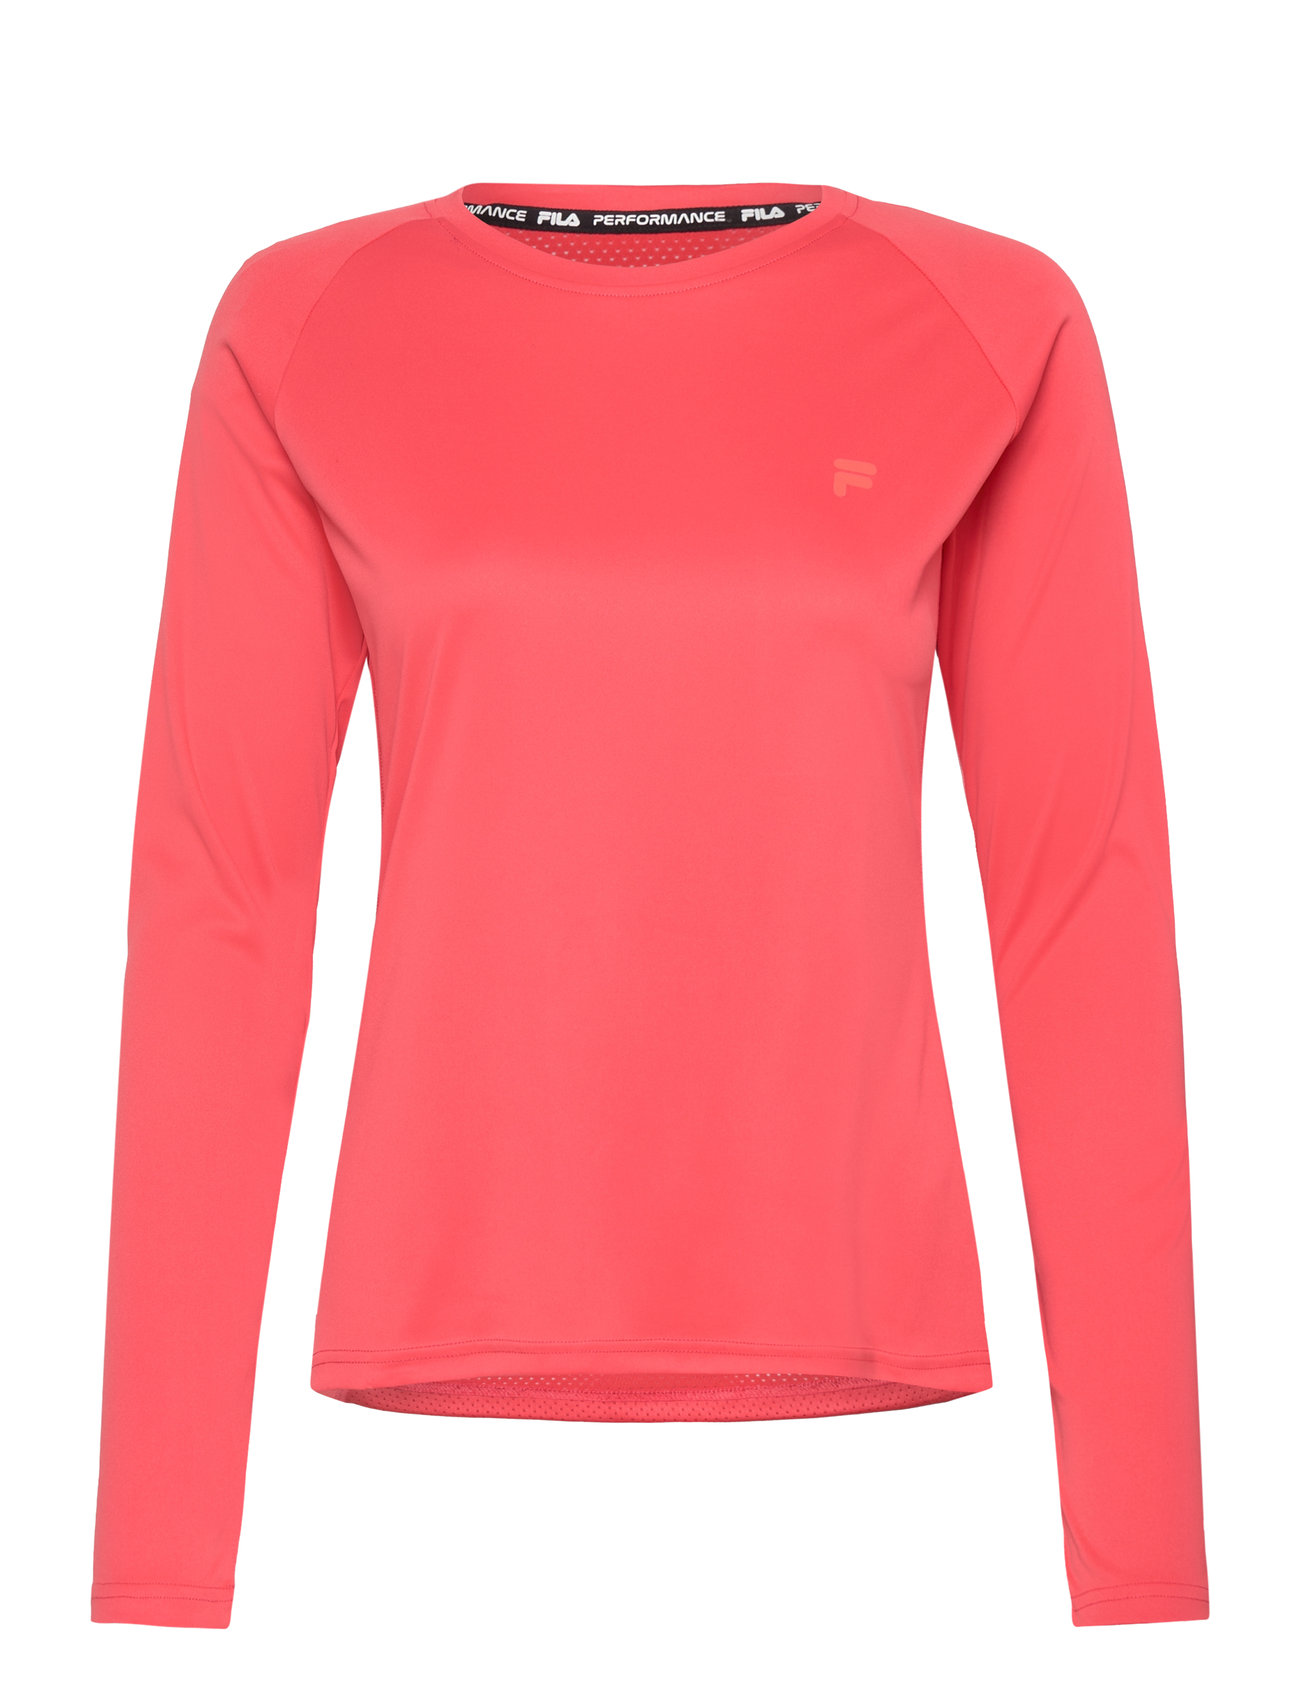 Ramacca Running Shirt Tops T-shirts & Tops Long-sleeved Coral FILA